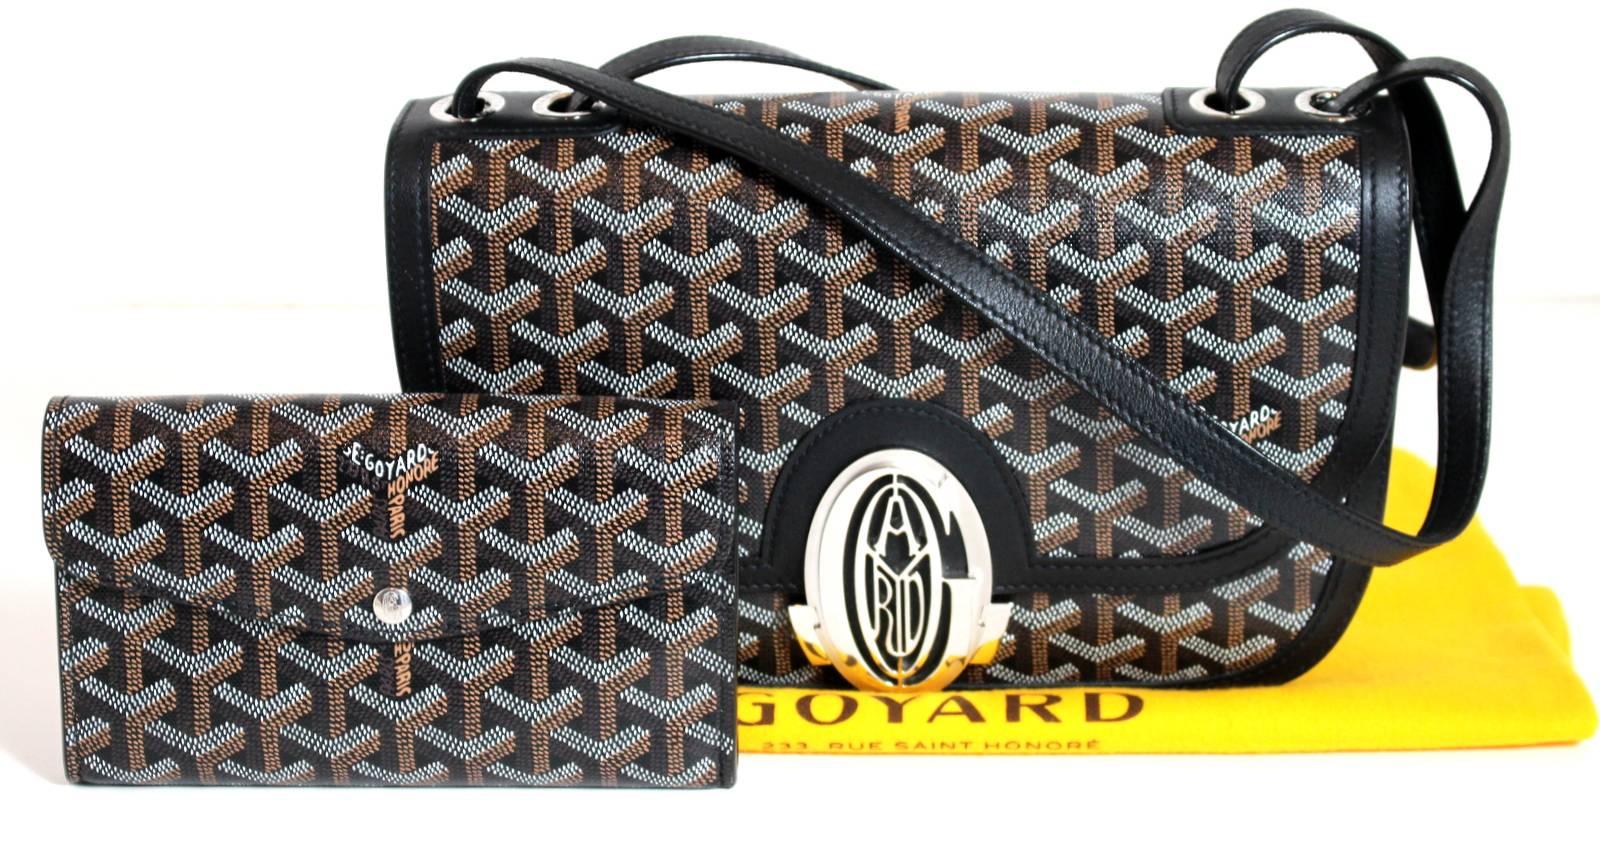 233 Goyard Black Leather Shoulder Bag with wallet- Ltd. Ed. 1